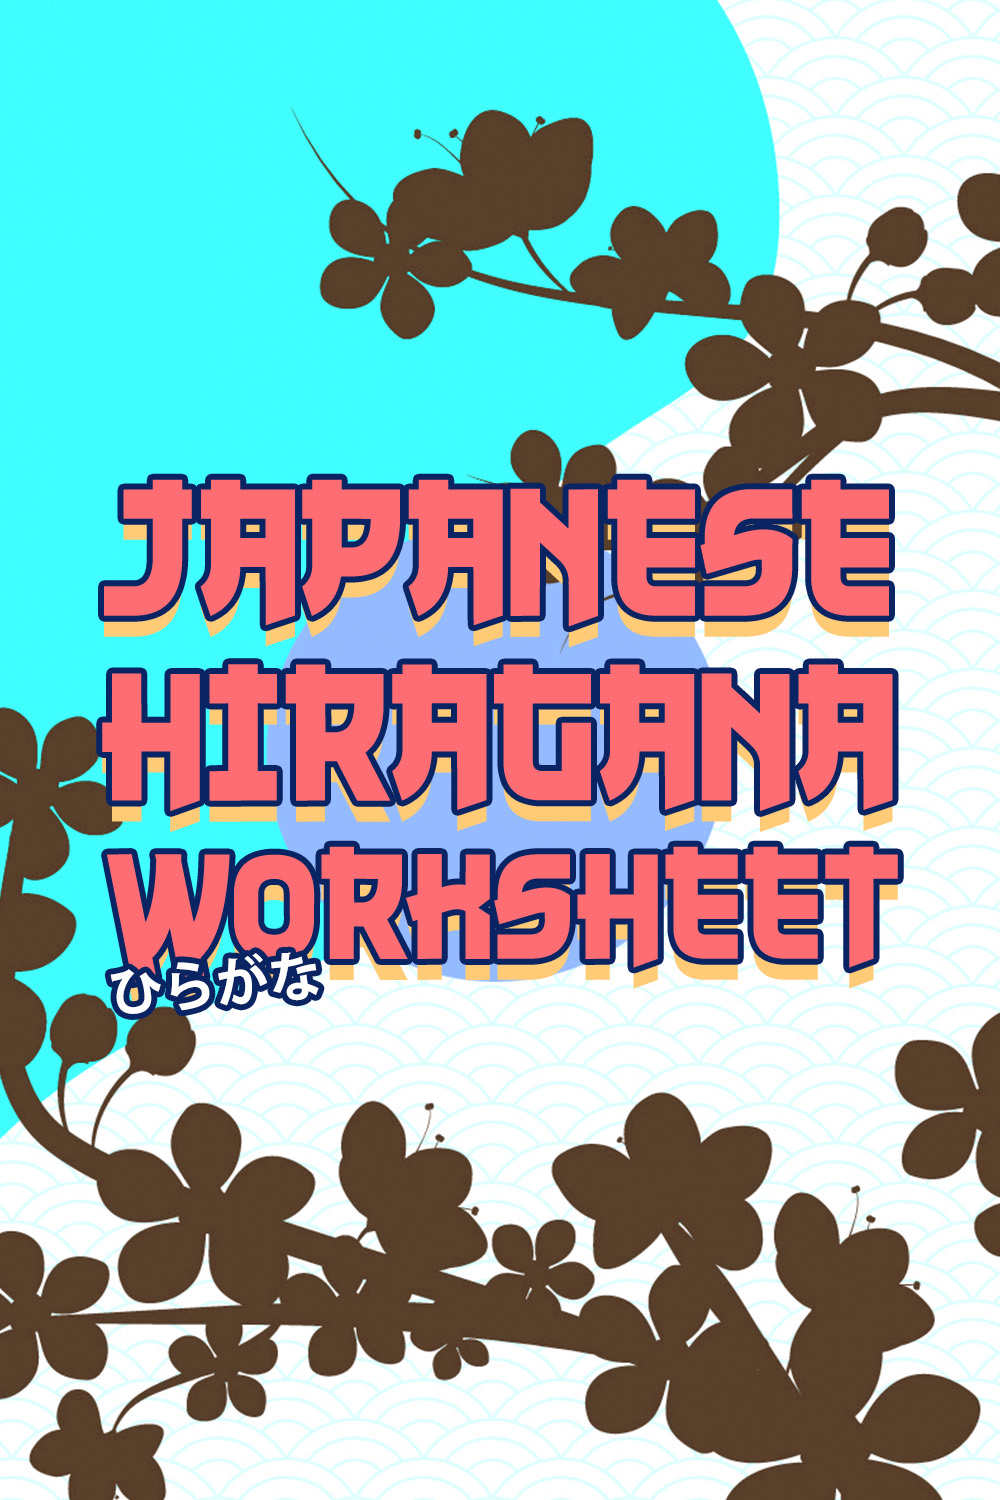 16 Images of Japanese Hiragana Worksheets